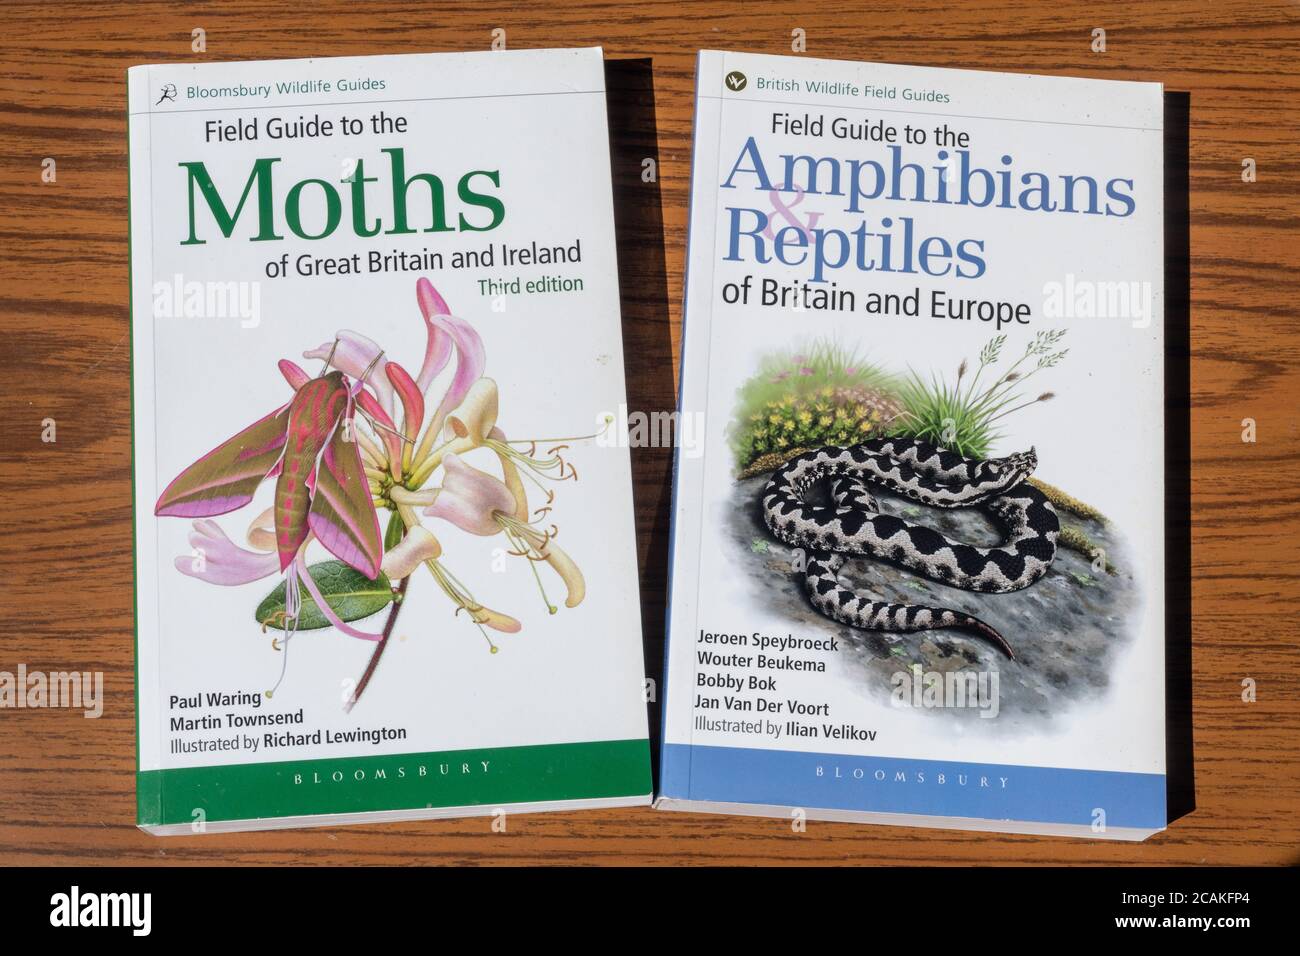 Libri sulla fauna selvatica, guide sul campo di Bloomsbury, identificazione di falene, anfibi e rettili Foto Stock